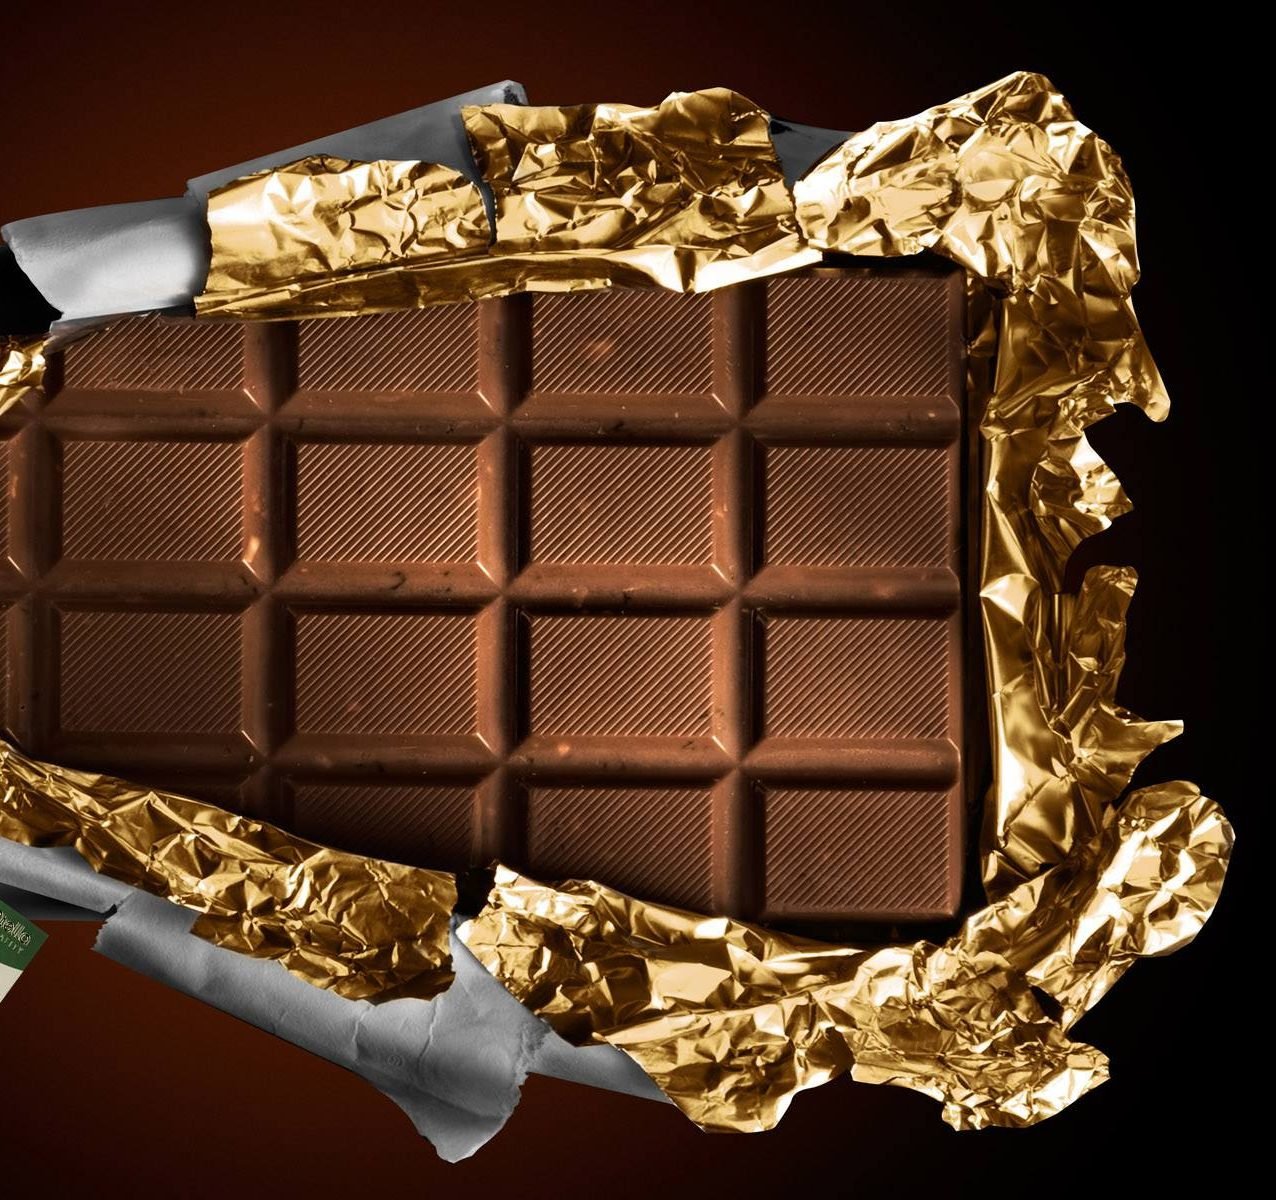 Vânzările de ciocolată elveţiană, grav afectate de pandemia de COVID-19